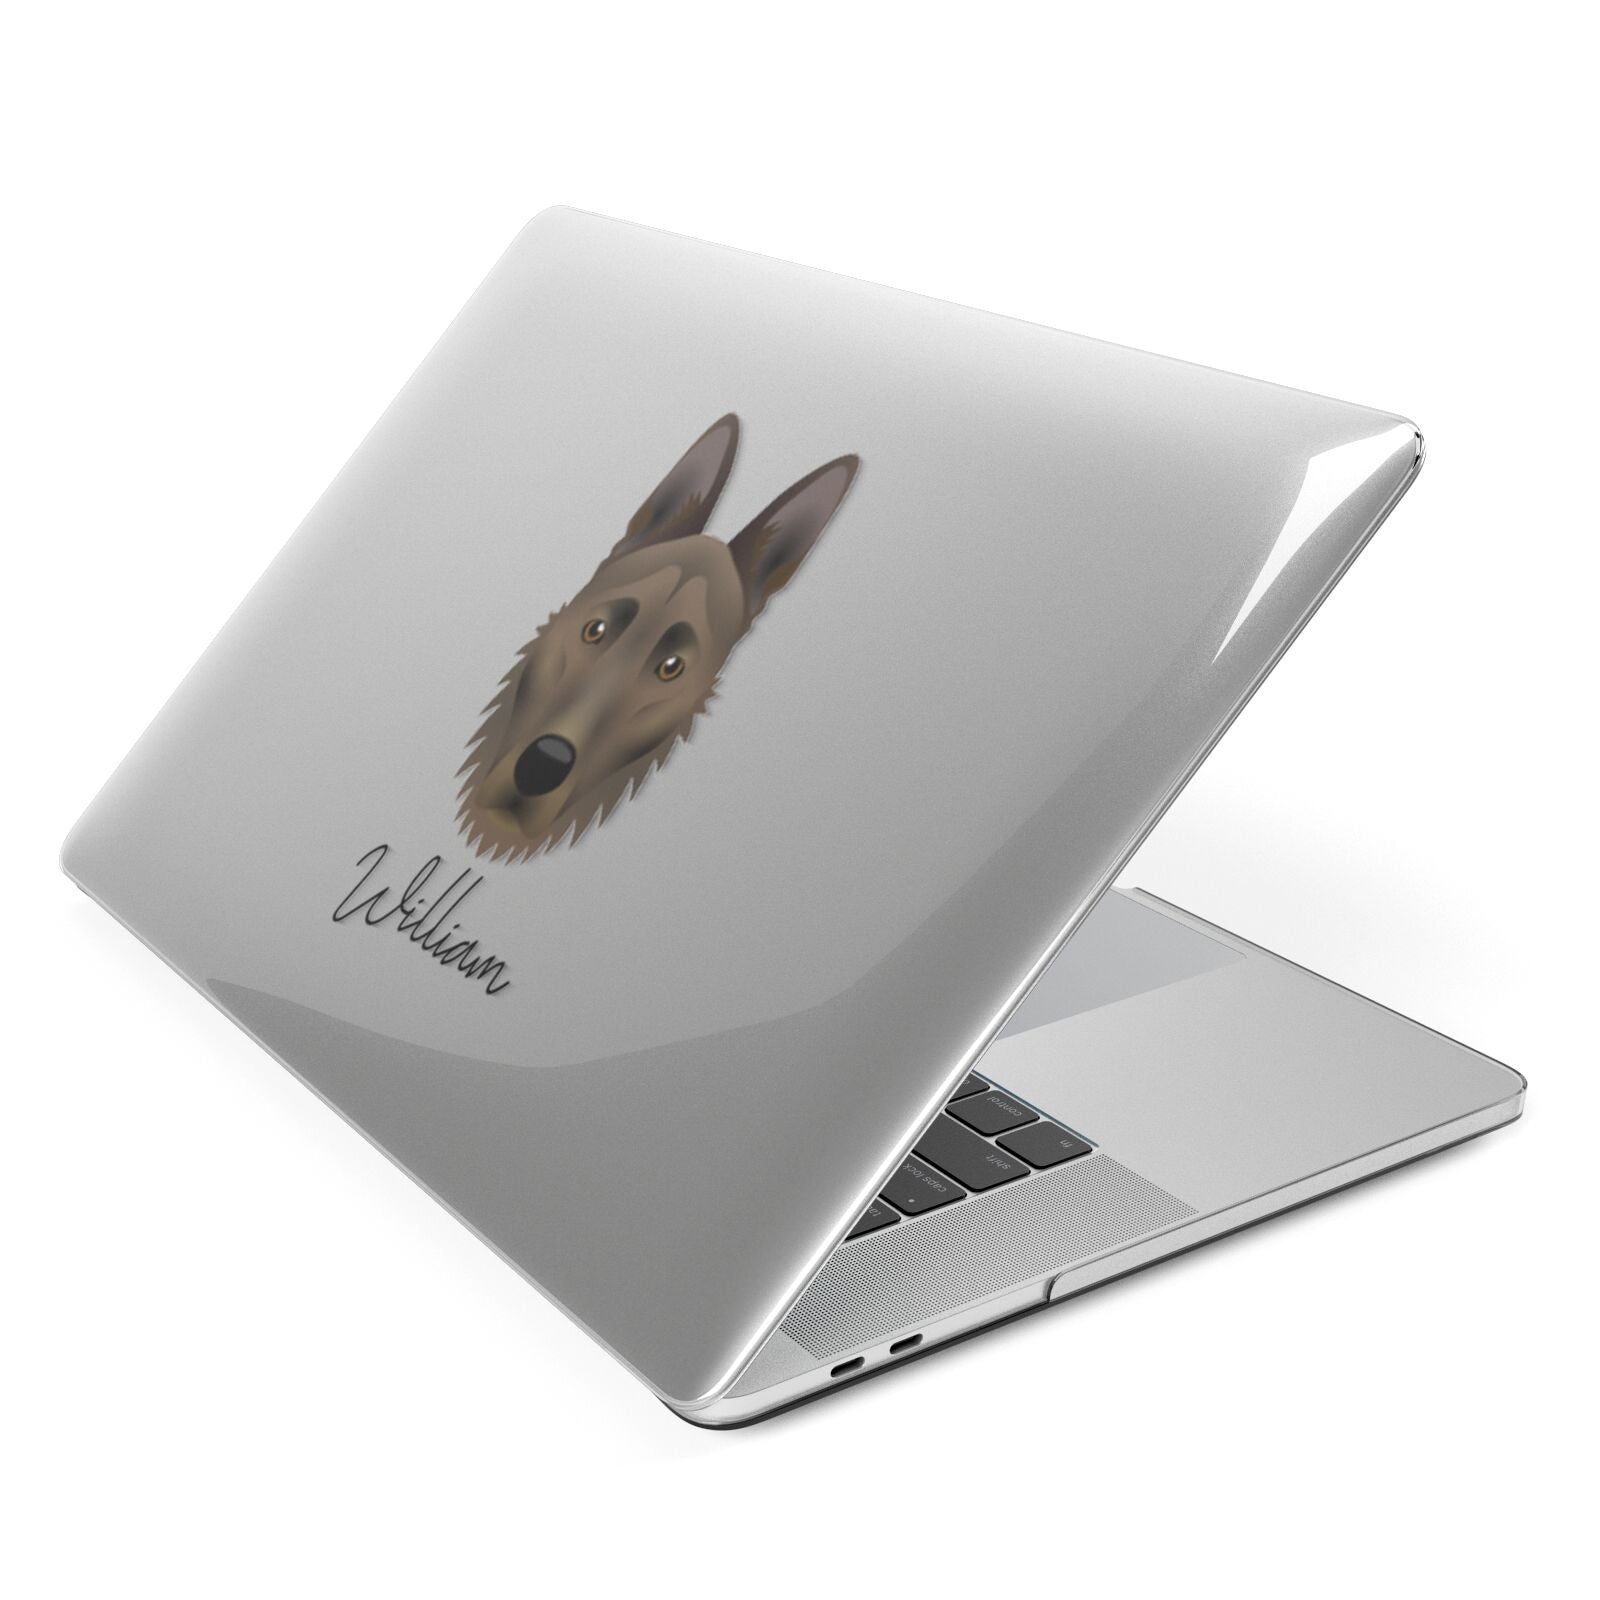 Dutch Shepherd Personalised Apple MacBook Case Side View